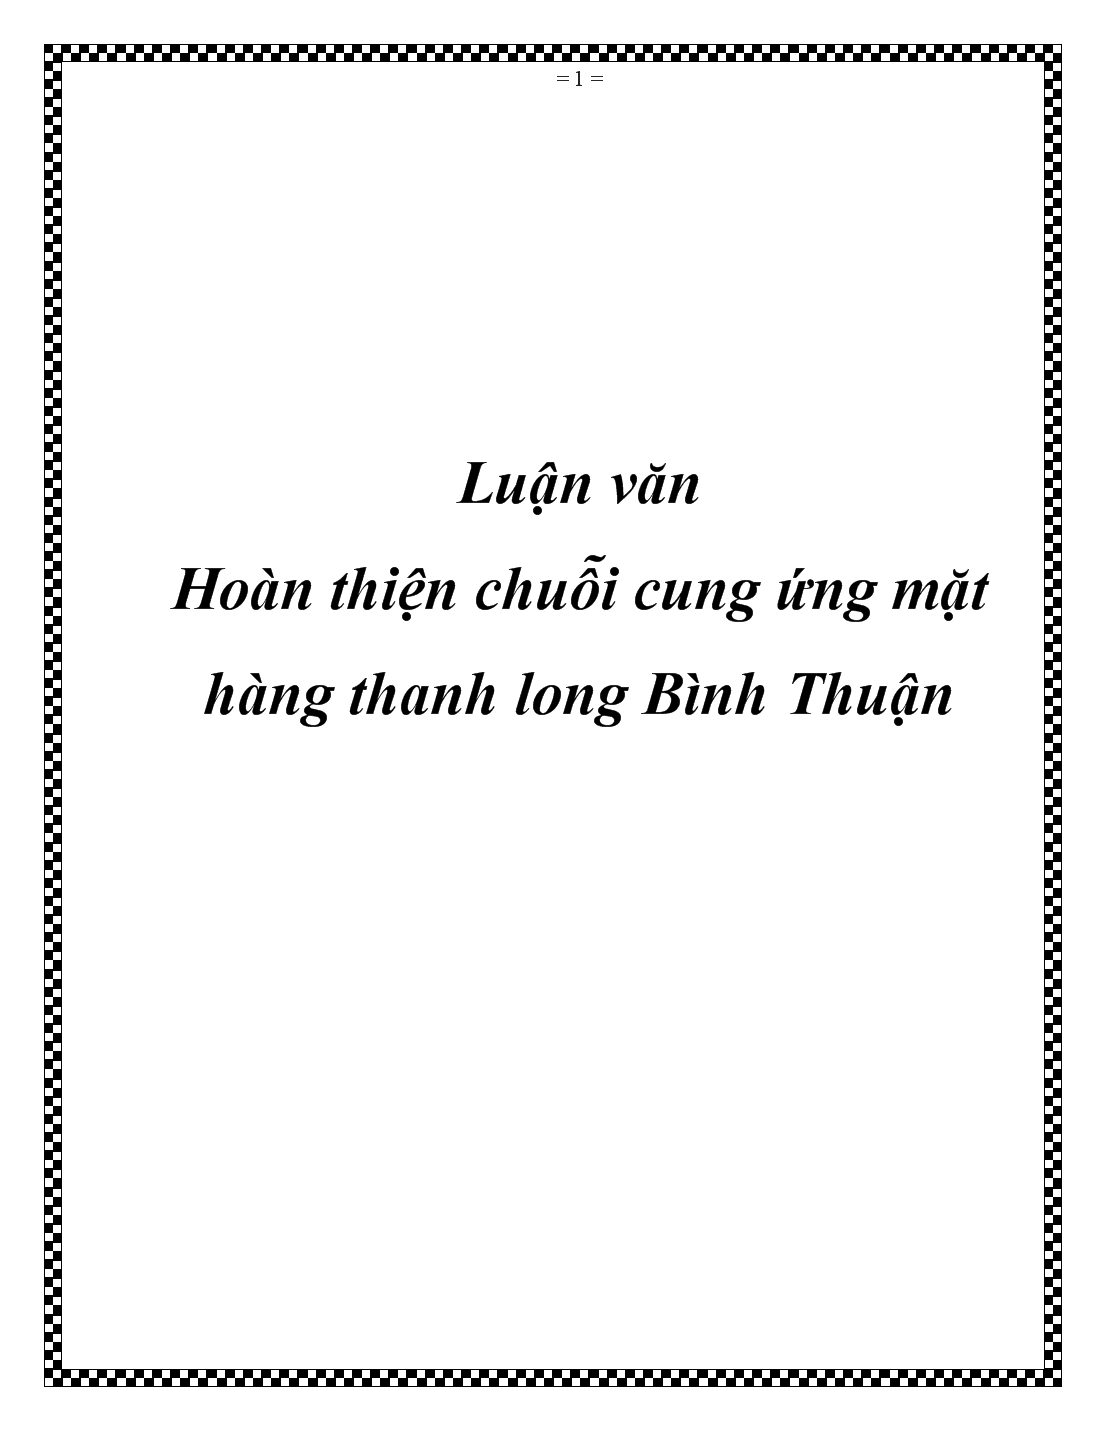 Luận văn Hoàn thiện chuỗi cung ứng mặt hàng thanh long Bình Thuận trang 1